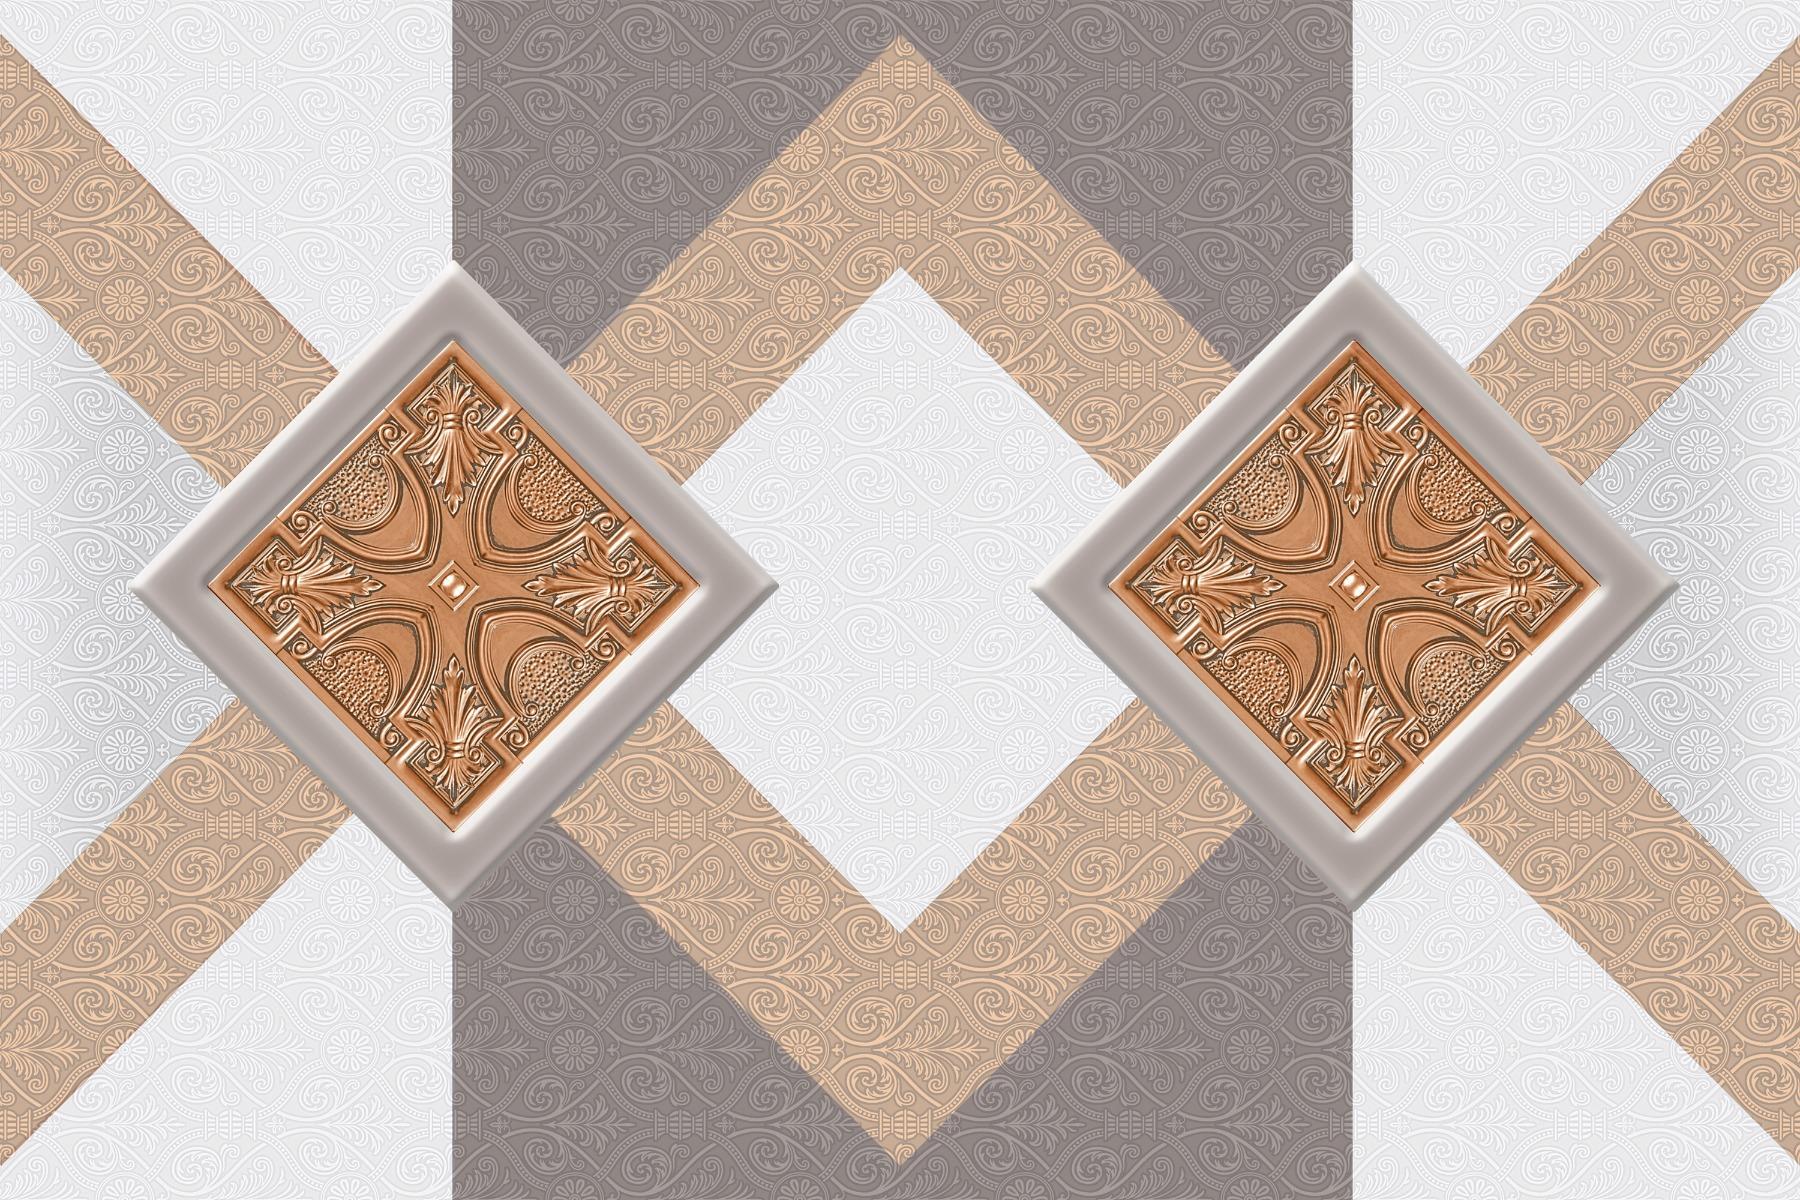 Geometric Tiles for Bathroom Tiles, Living Room Tiles, Kitchen Tiles, Bedroom Tiles, Balcony Tiles